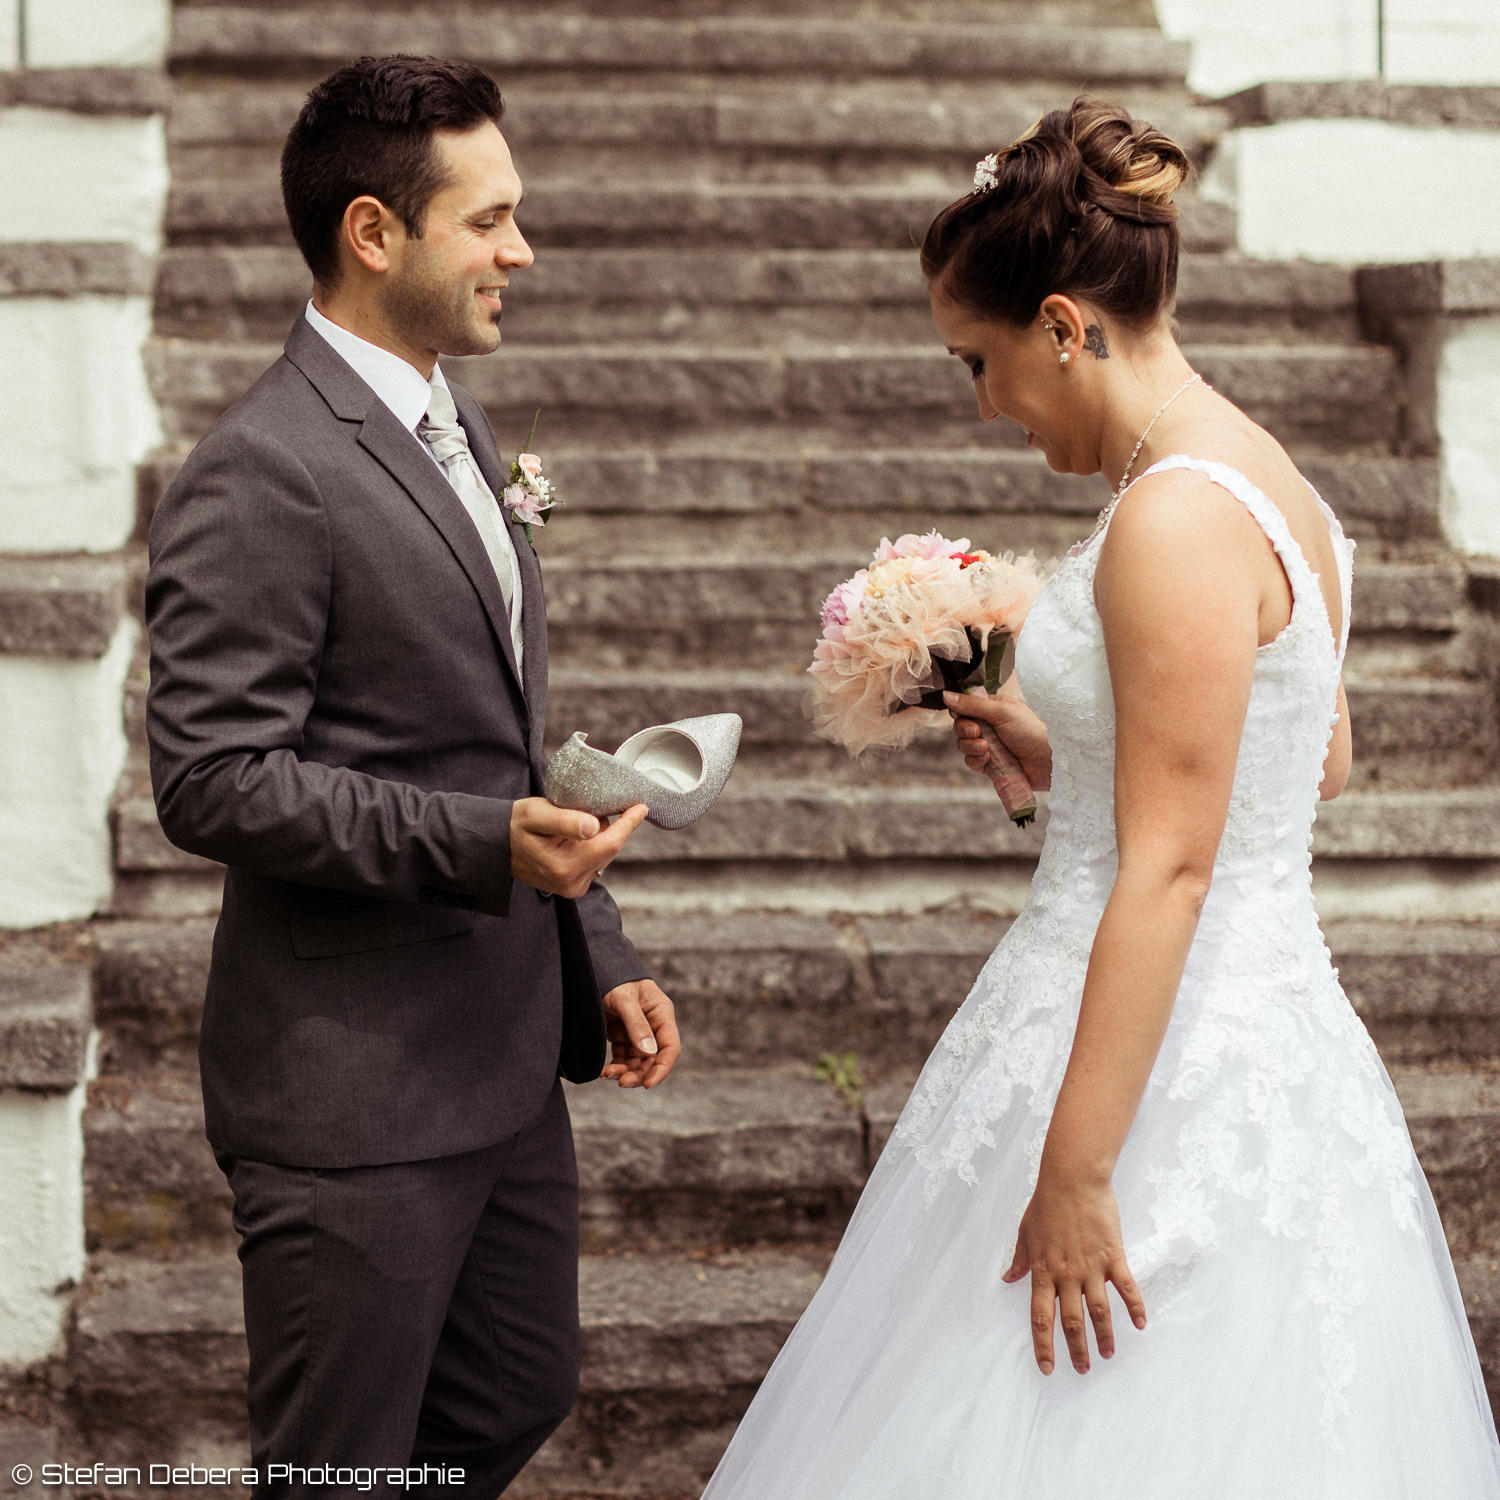 Bilder La novia Hochzeitsmode für Braut und Bräutigam